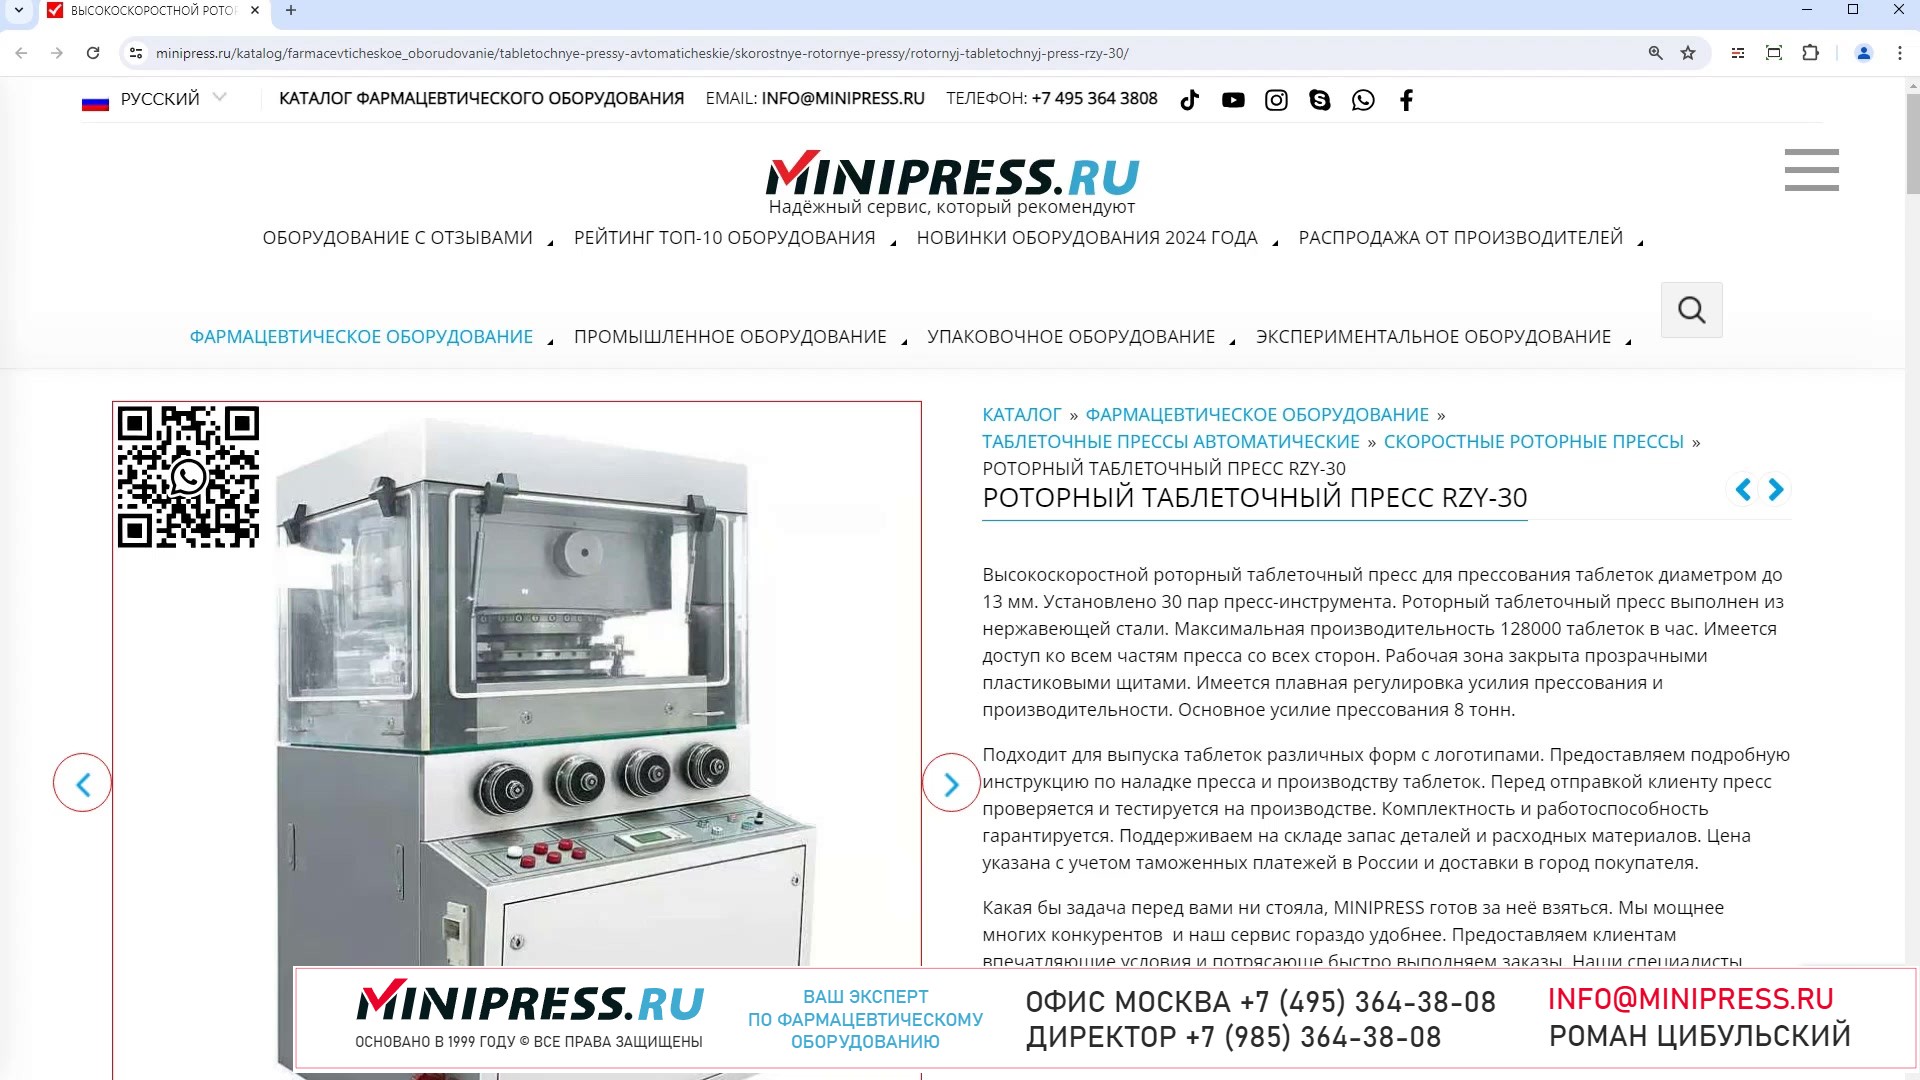 Minipress.ru Роторный таблеточный пресс RZY-30